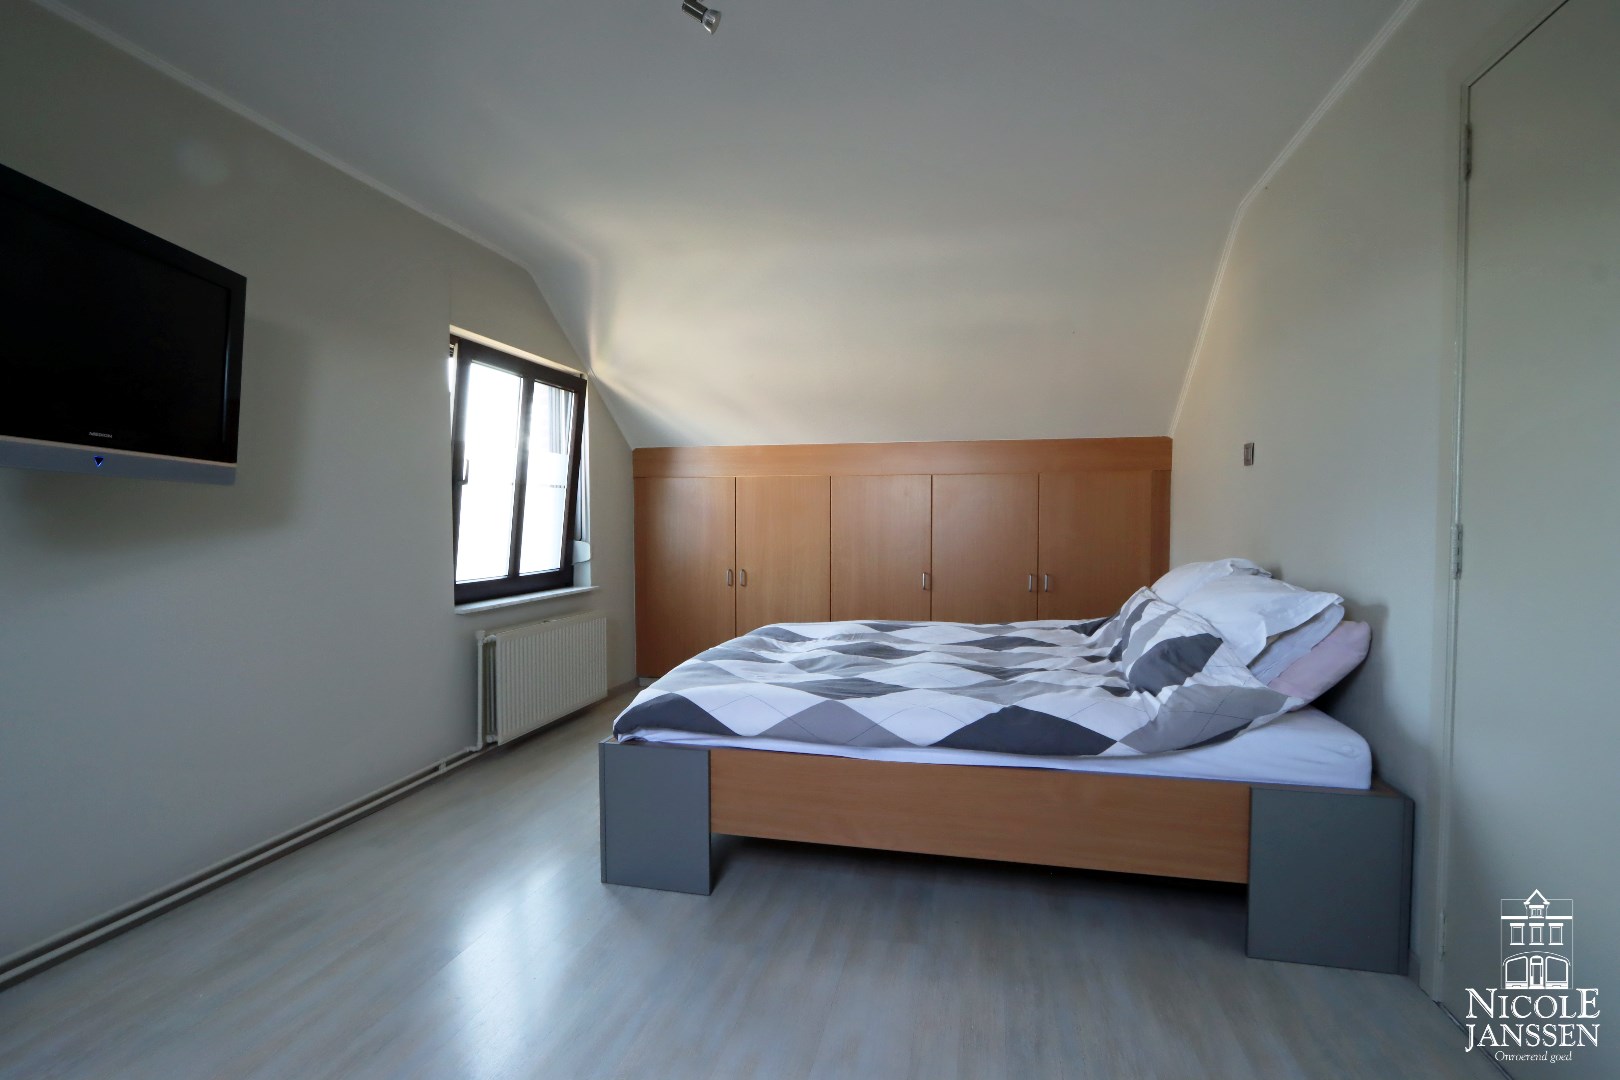 Slaapkamer met laminaatvloer en inbouwkasten